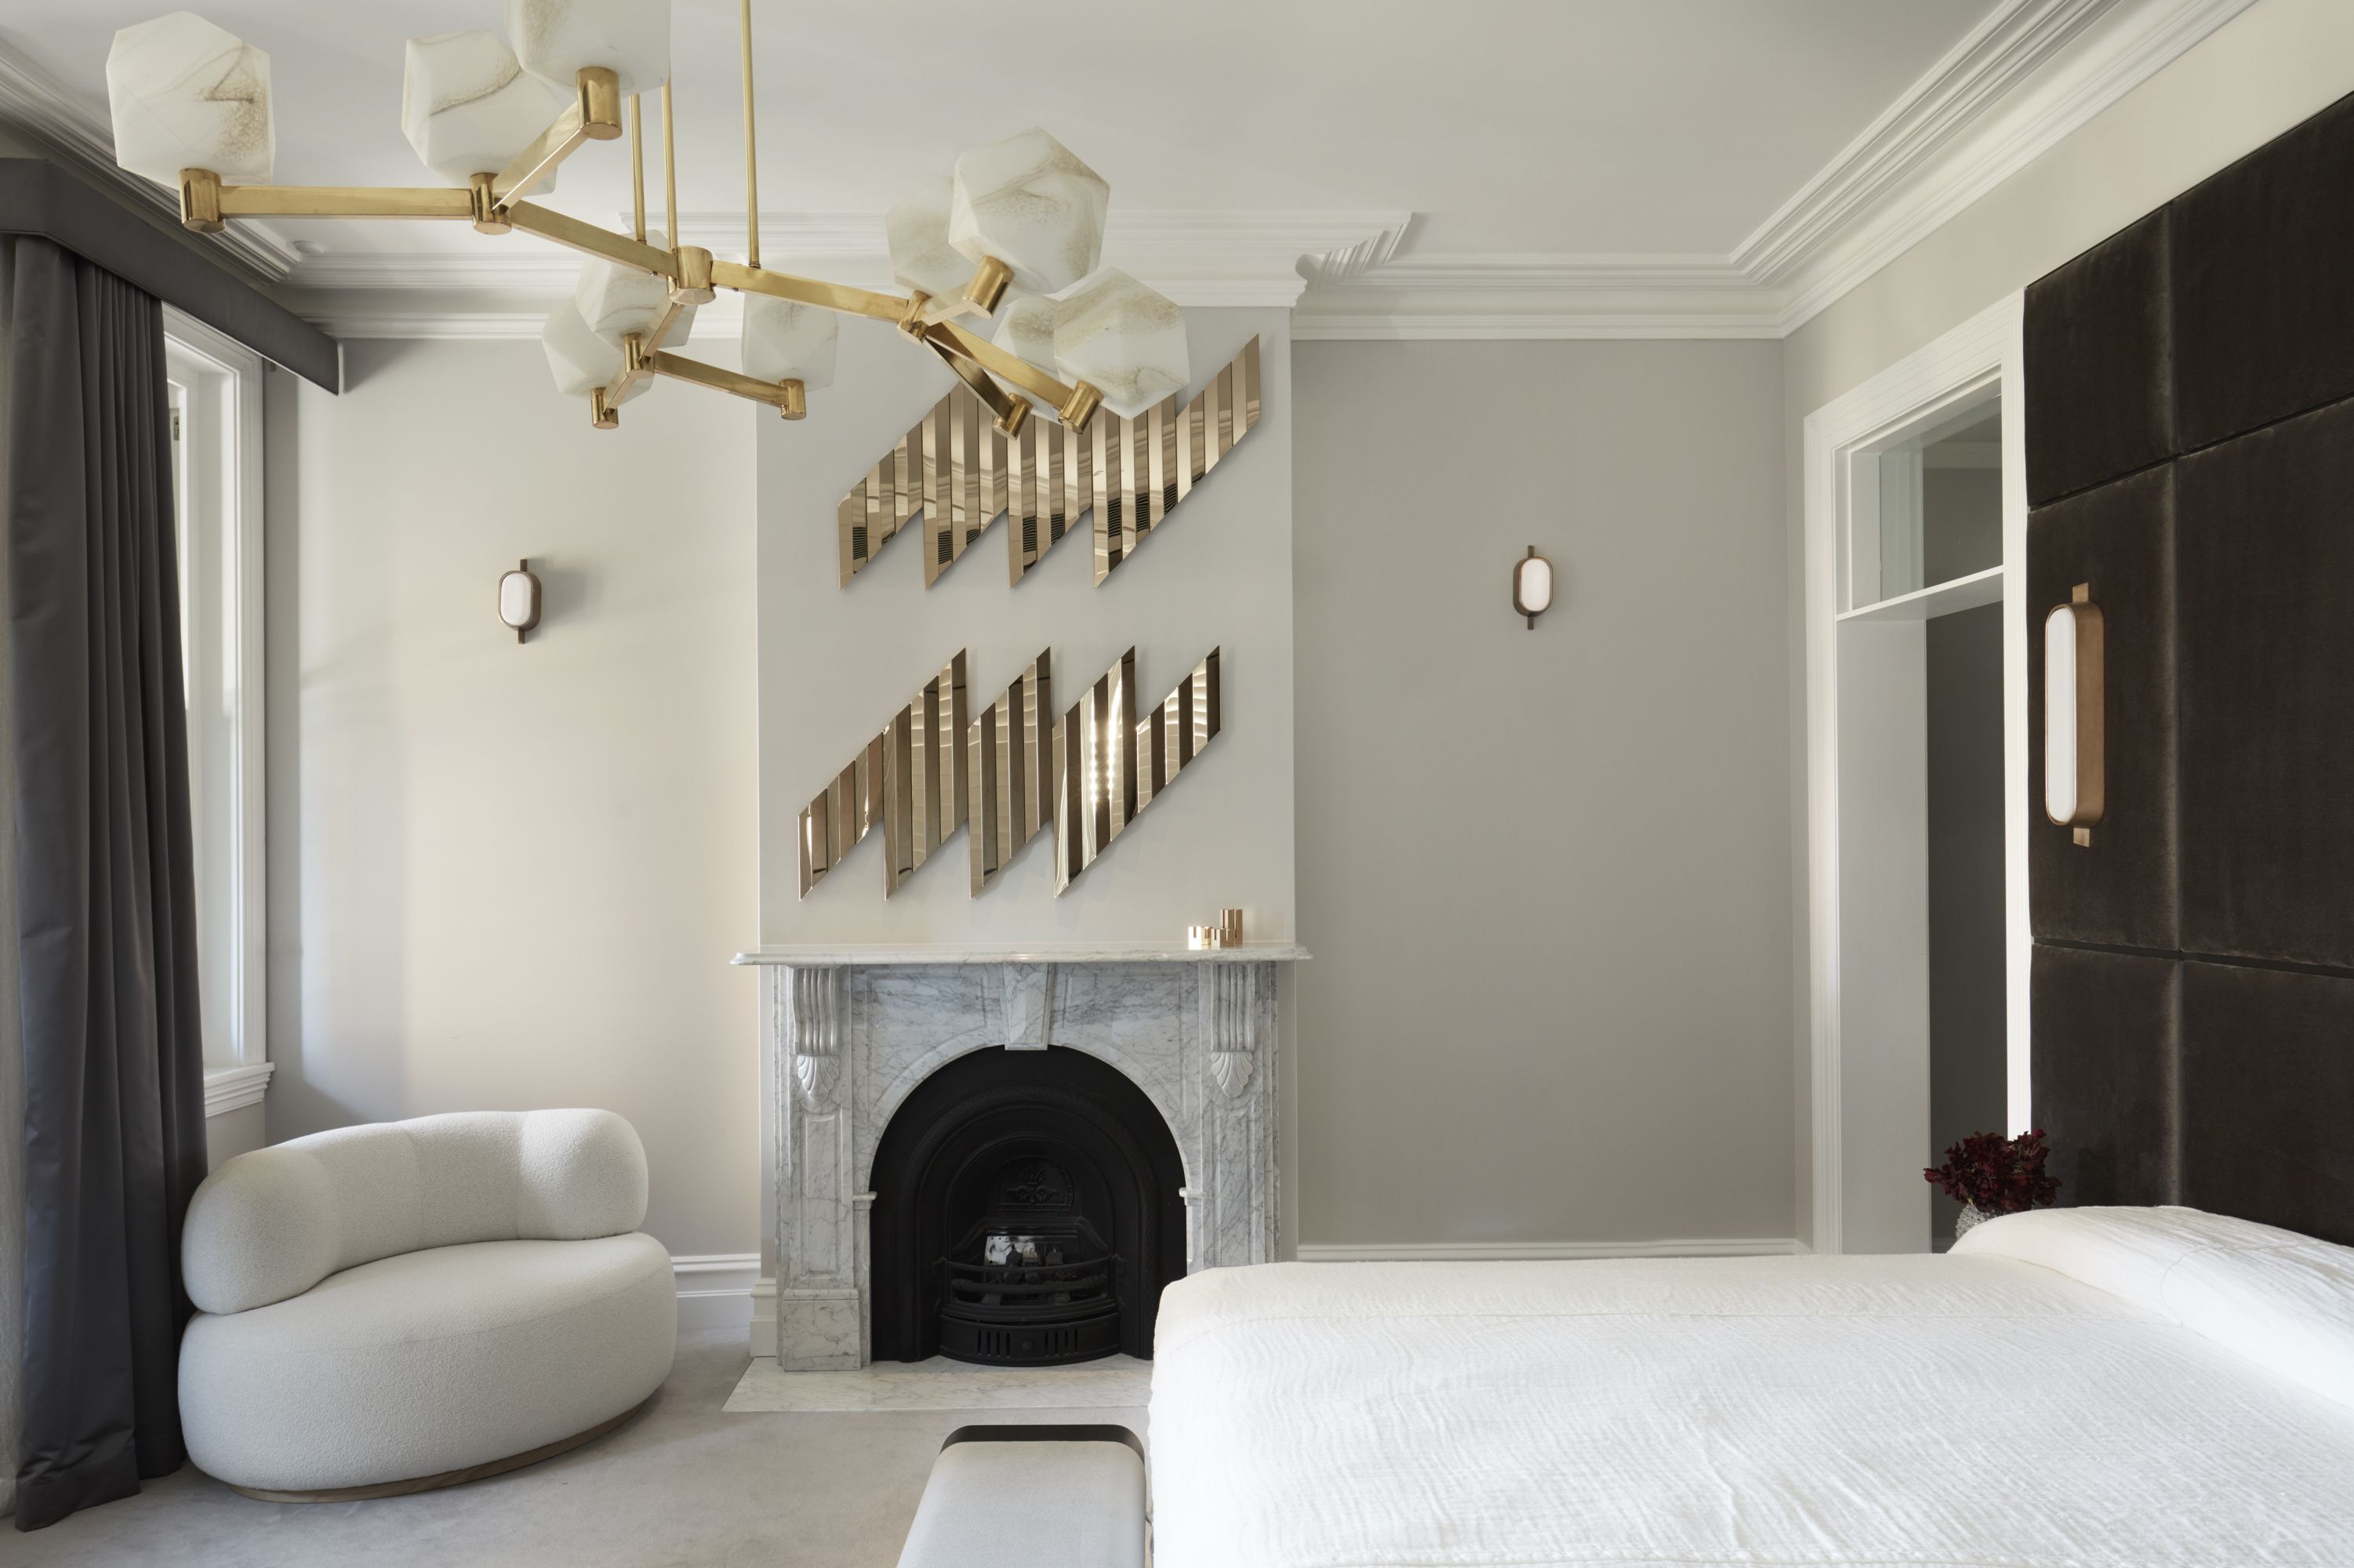 Interior De Un Dormitorio Moderno Con Cama Blanca Y Suelo De